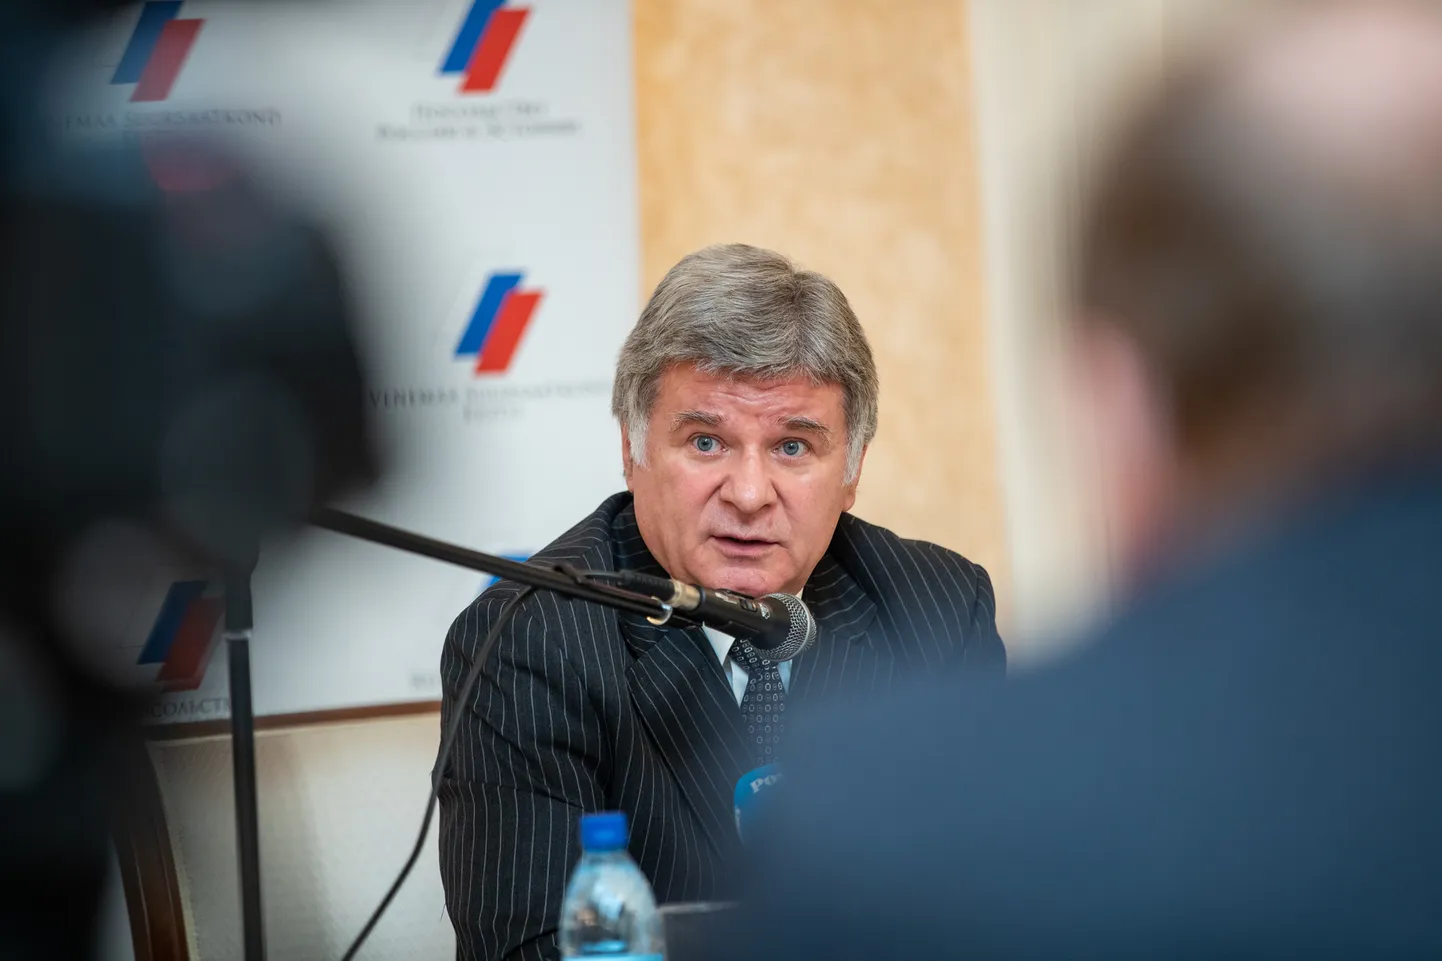 Venemaa suursaadiku Aleksandr Petrovi aastalõpu pressikonverents Venemaa Föderatsiooni Suursaatkonnas.